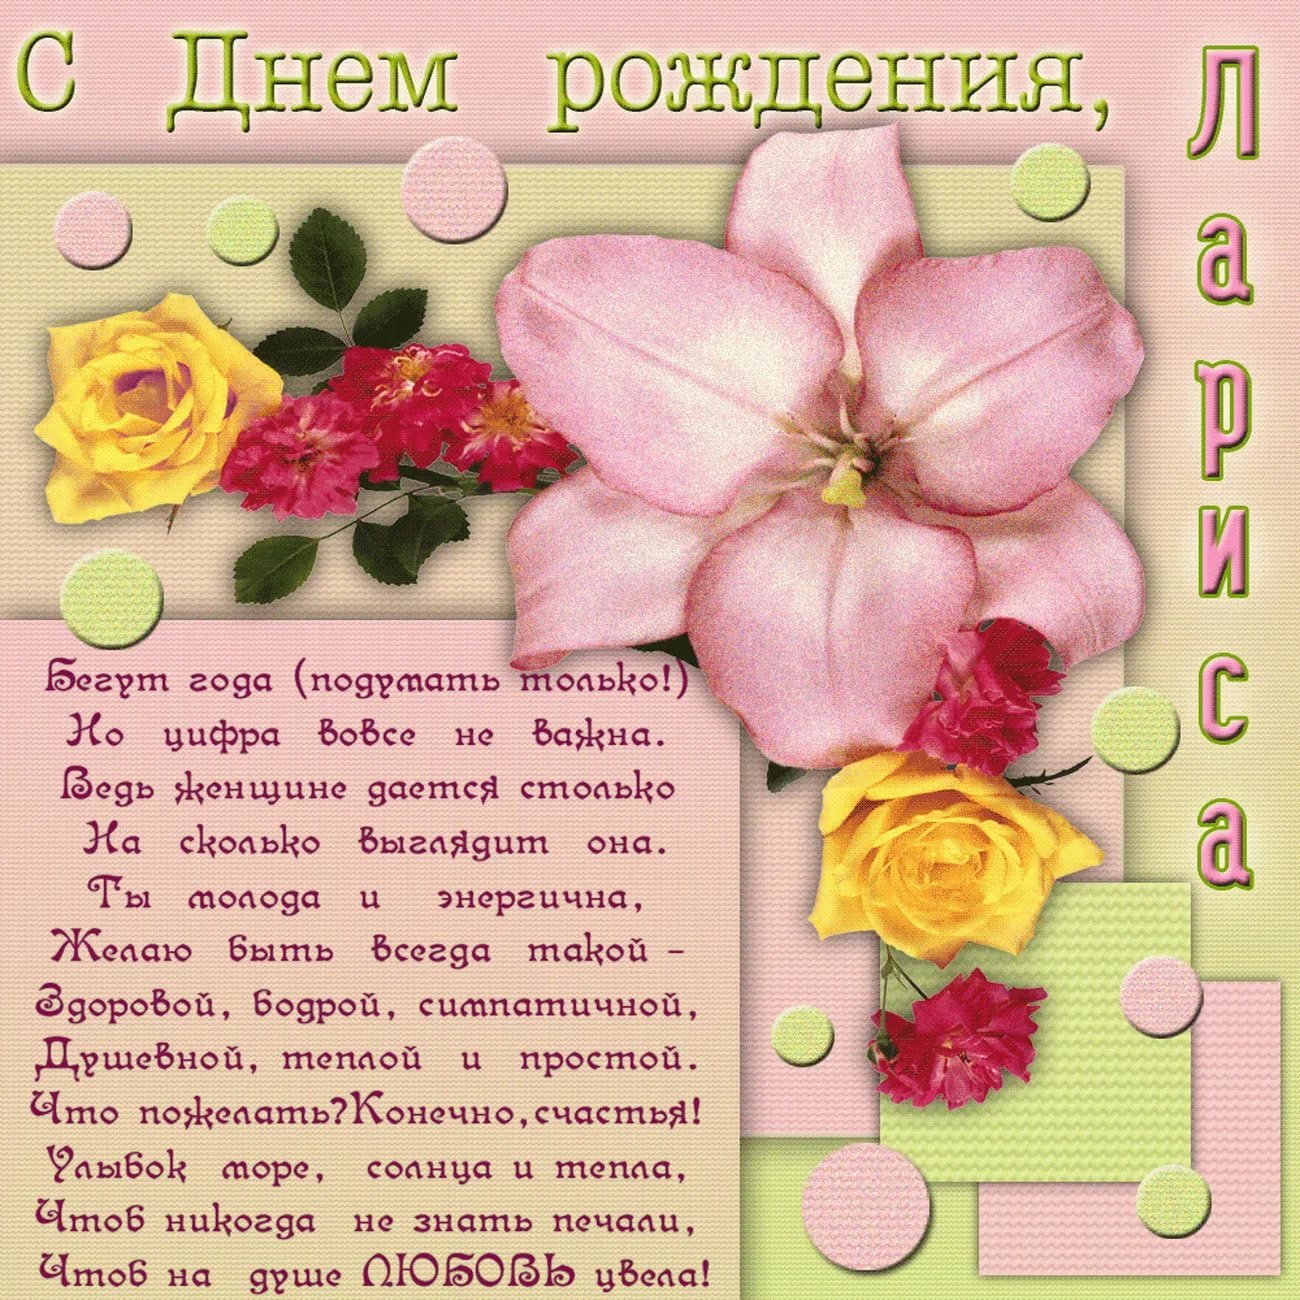 Ответы fitdiets.ru: Как поздравить с днем рождения на башкирском языке